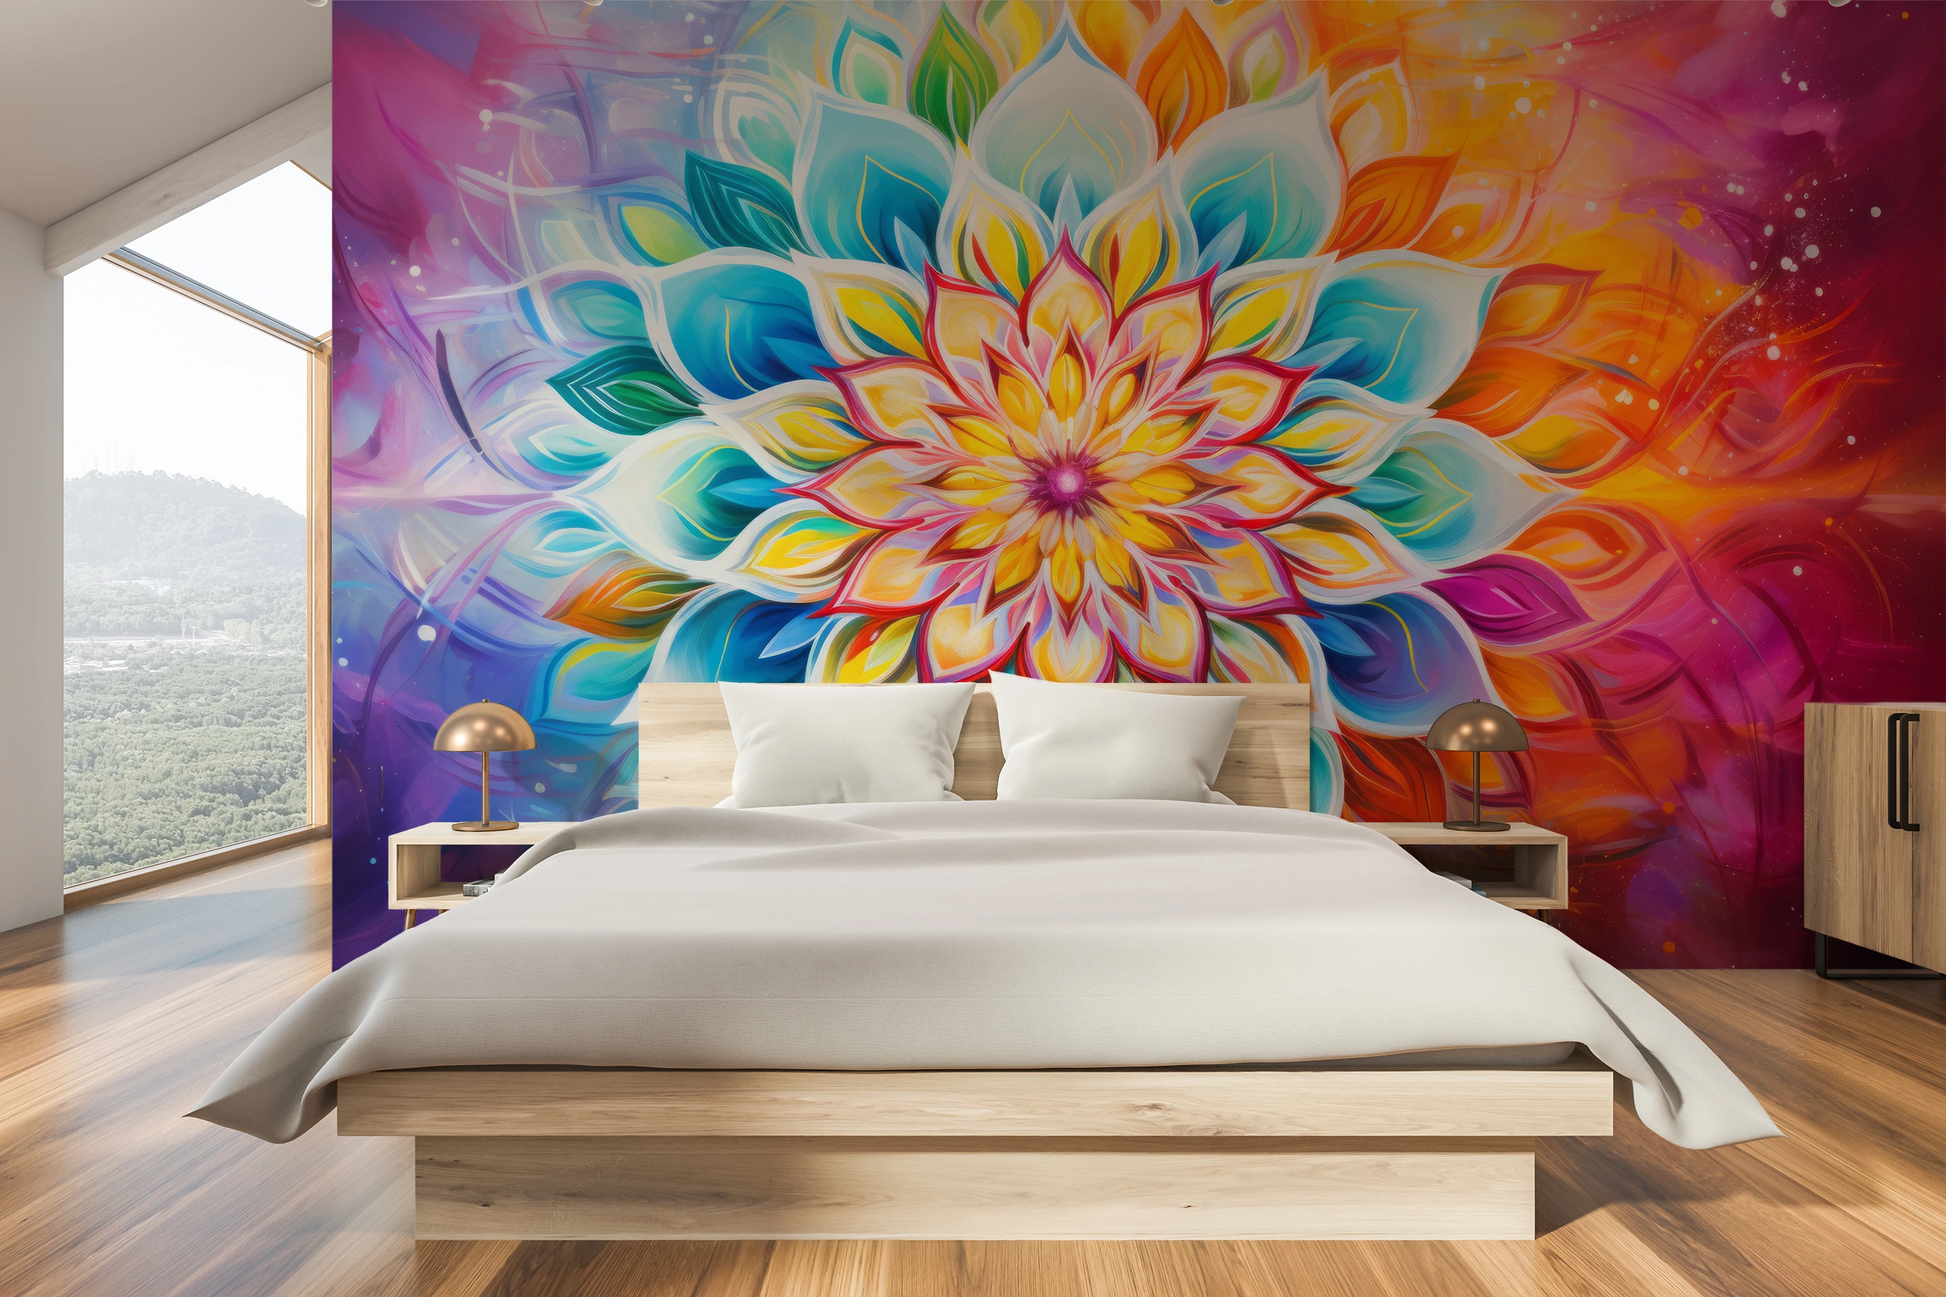 Fototapeta malowana o nazwie Vibrant Lotus pokazana w aranżacji wnętrza.